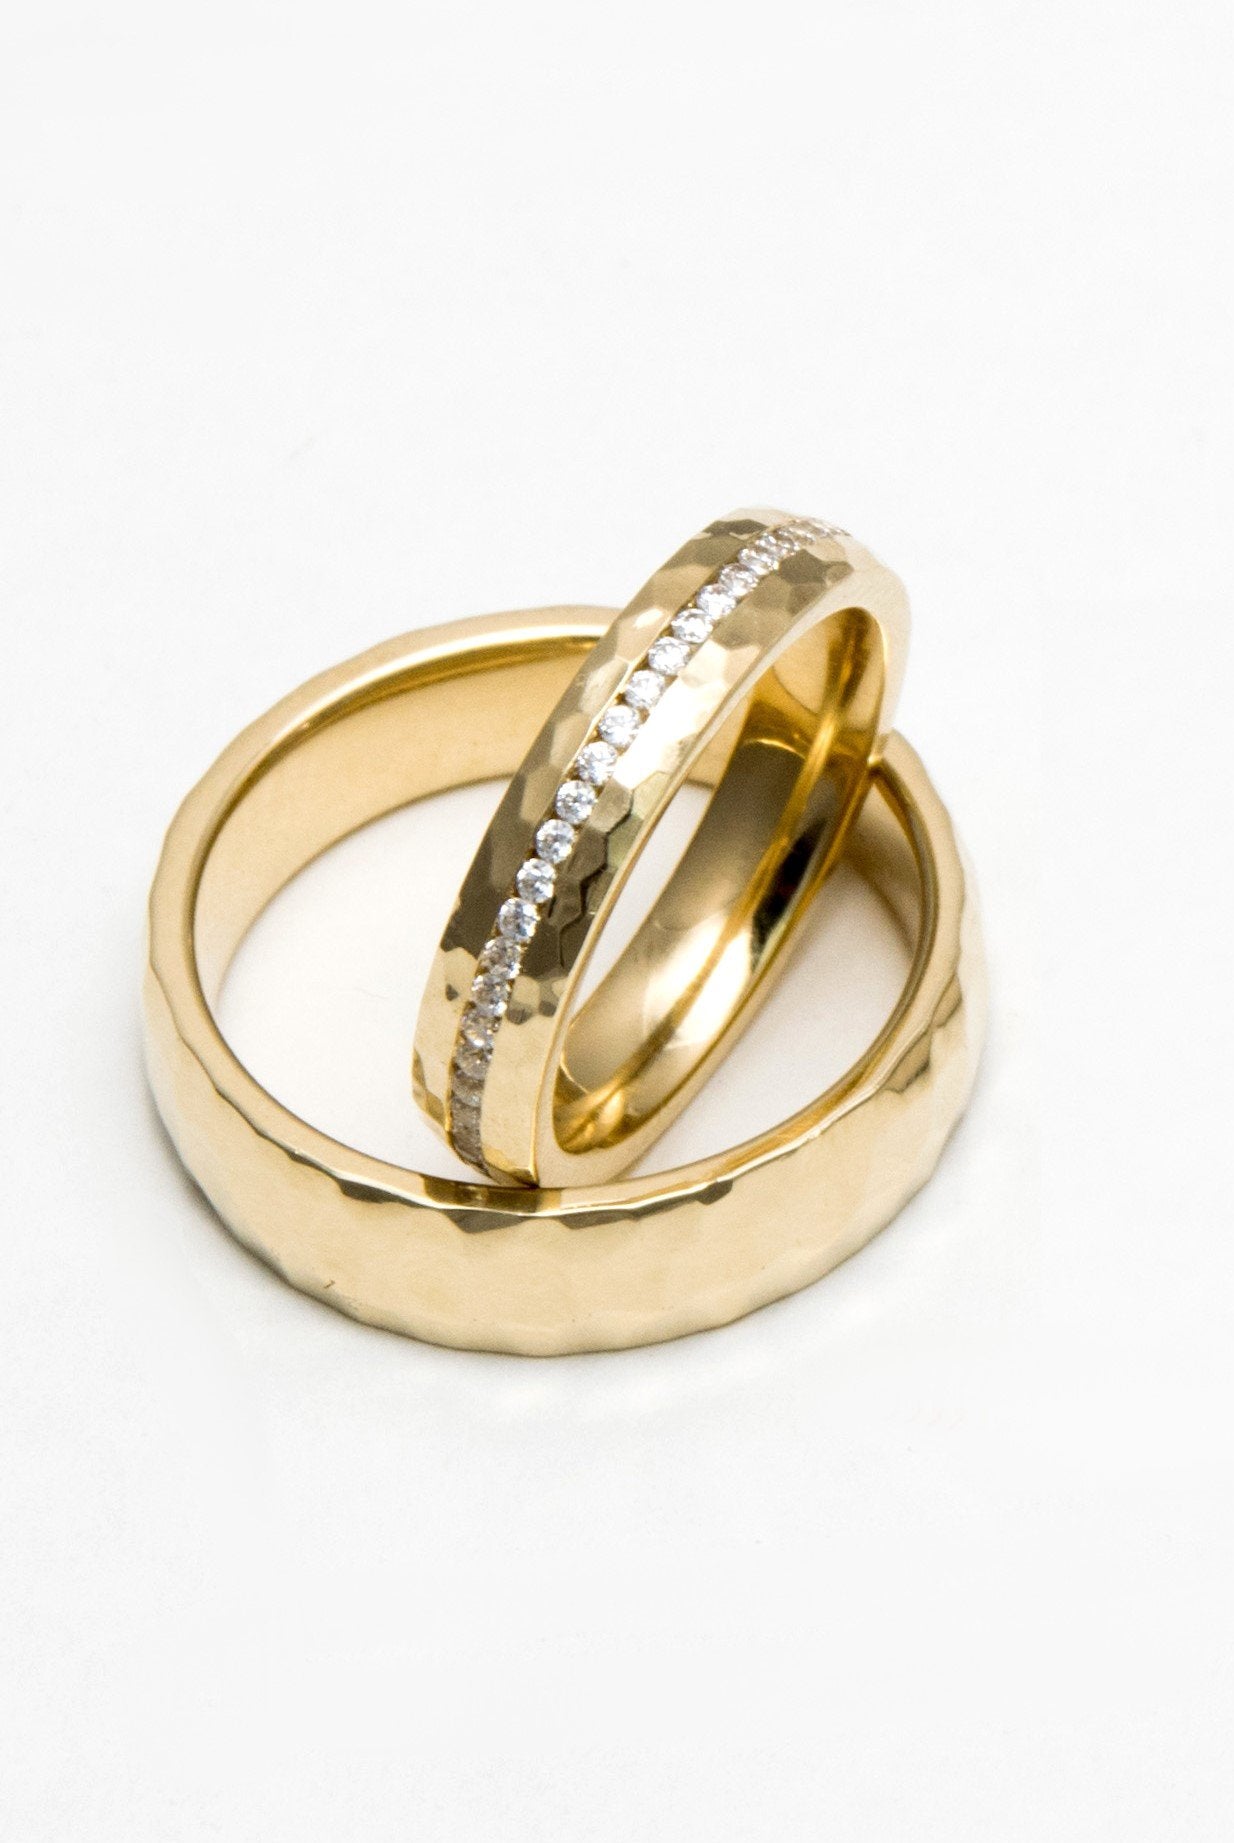 DIAMOND WEDDING BAND SET - Danelian Jewelry